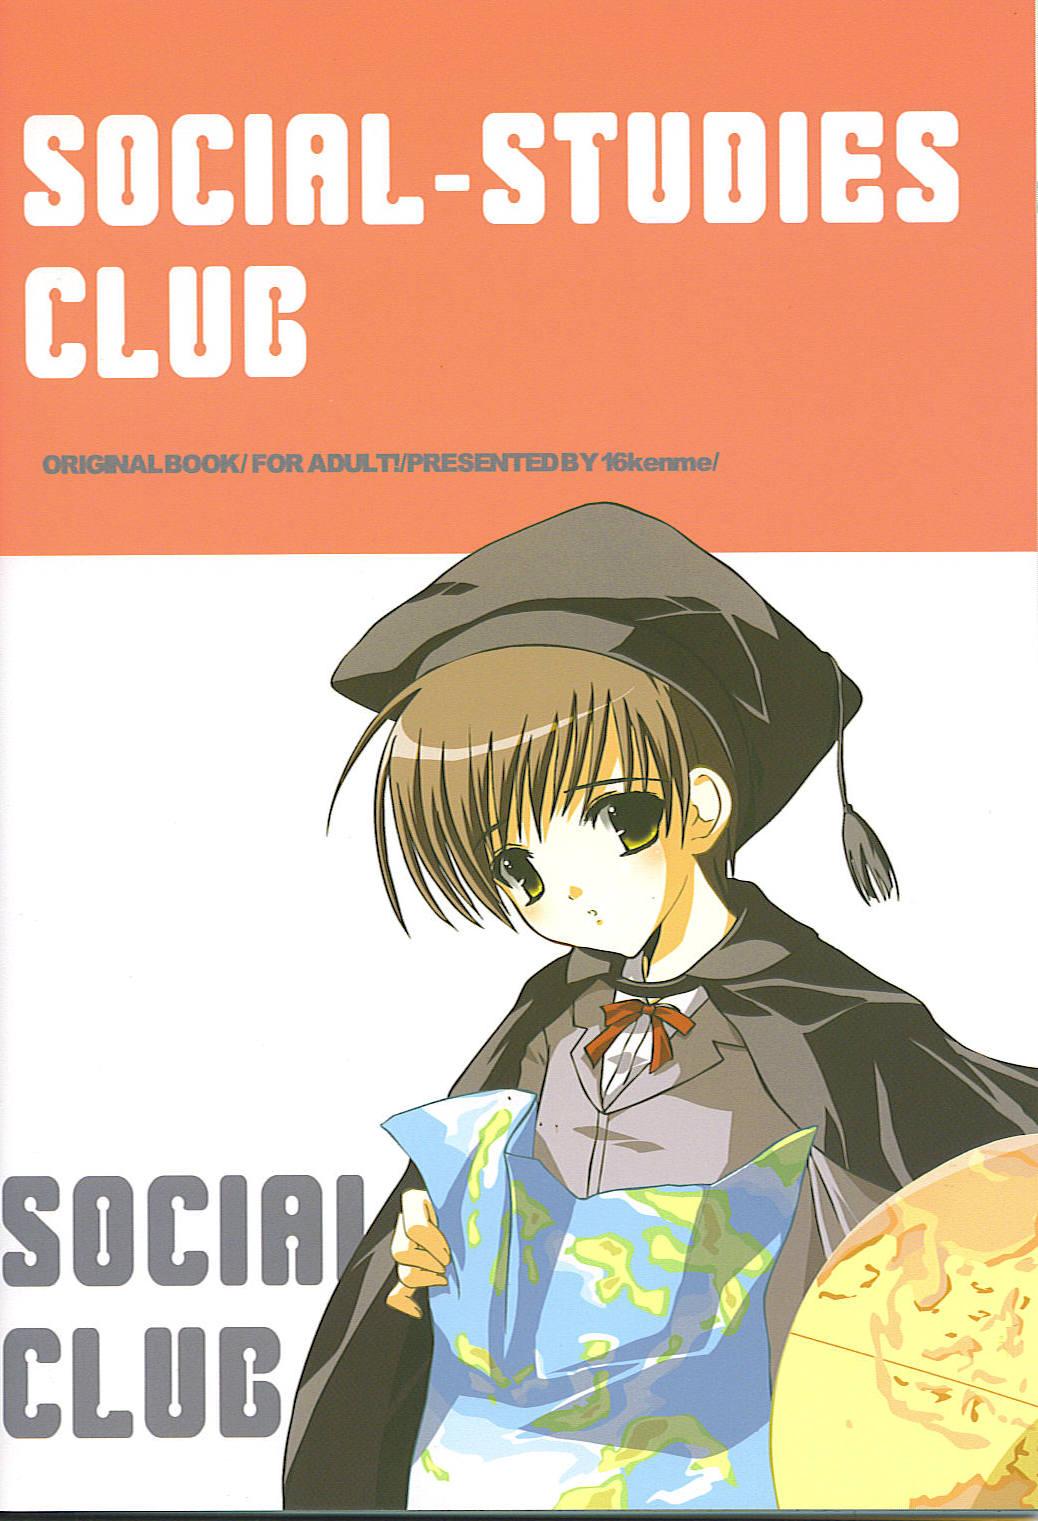 Social studies club 32